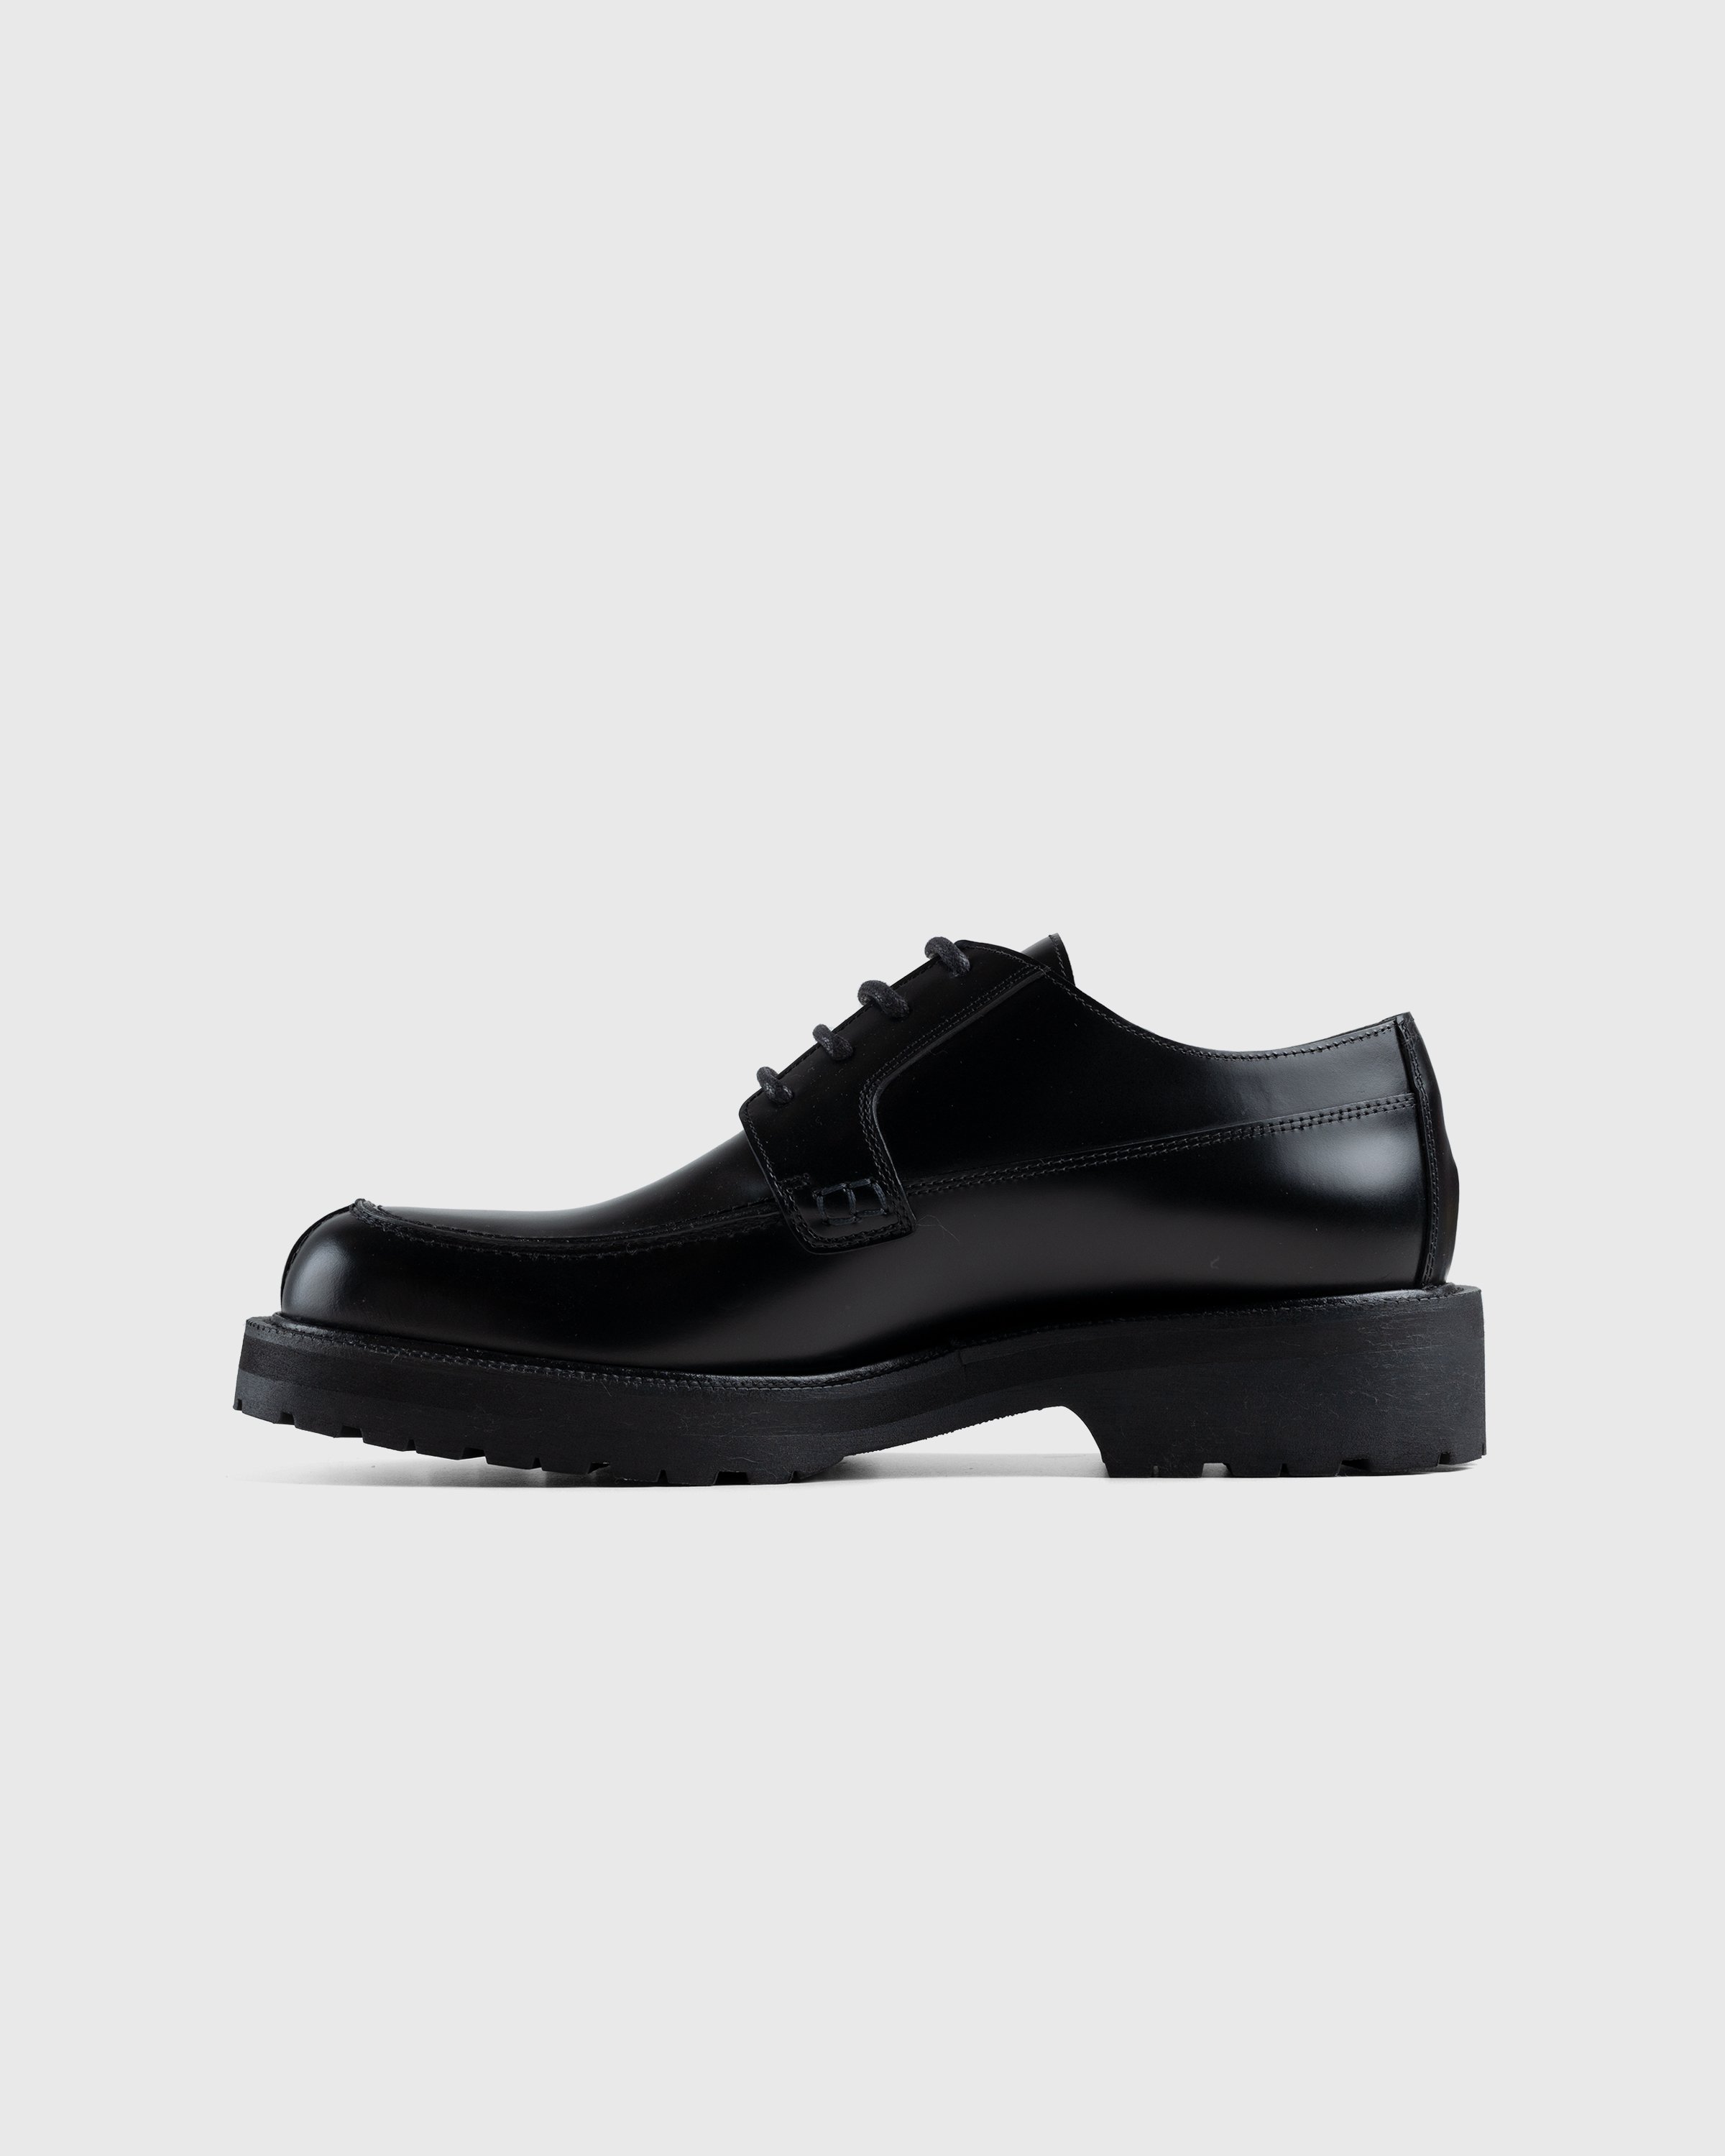 Dries van Noten - Patent Leather Derbies - Footwear - Black - Image 2